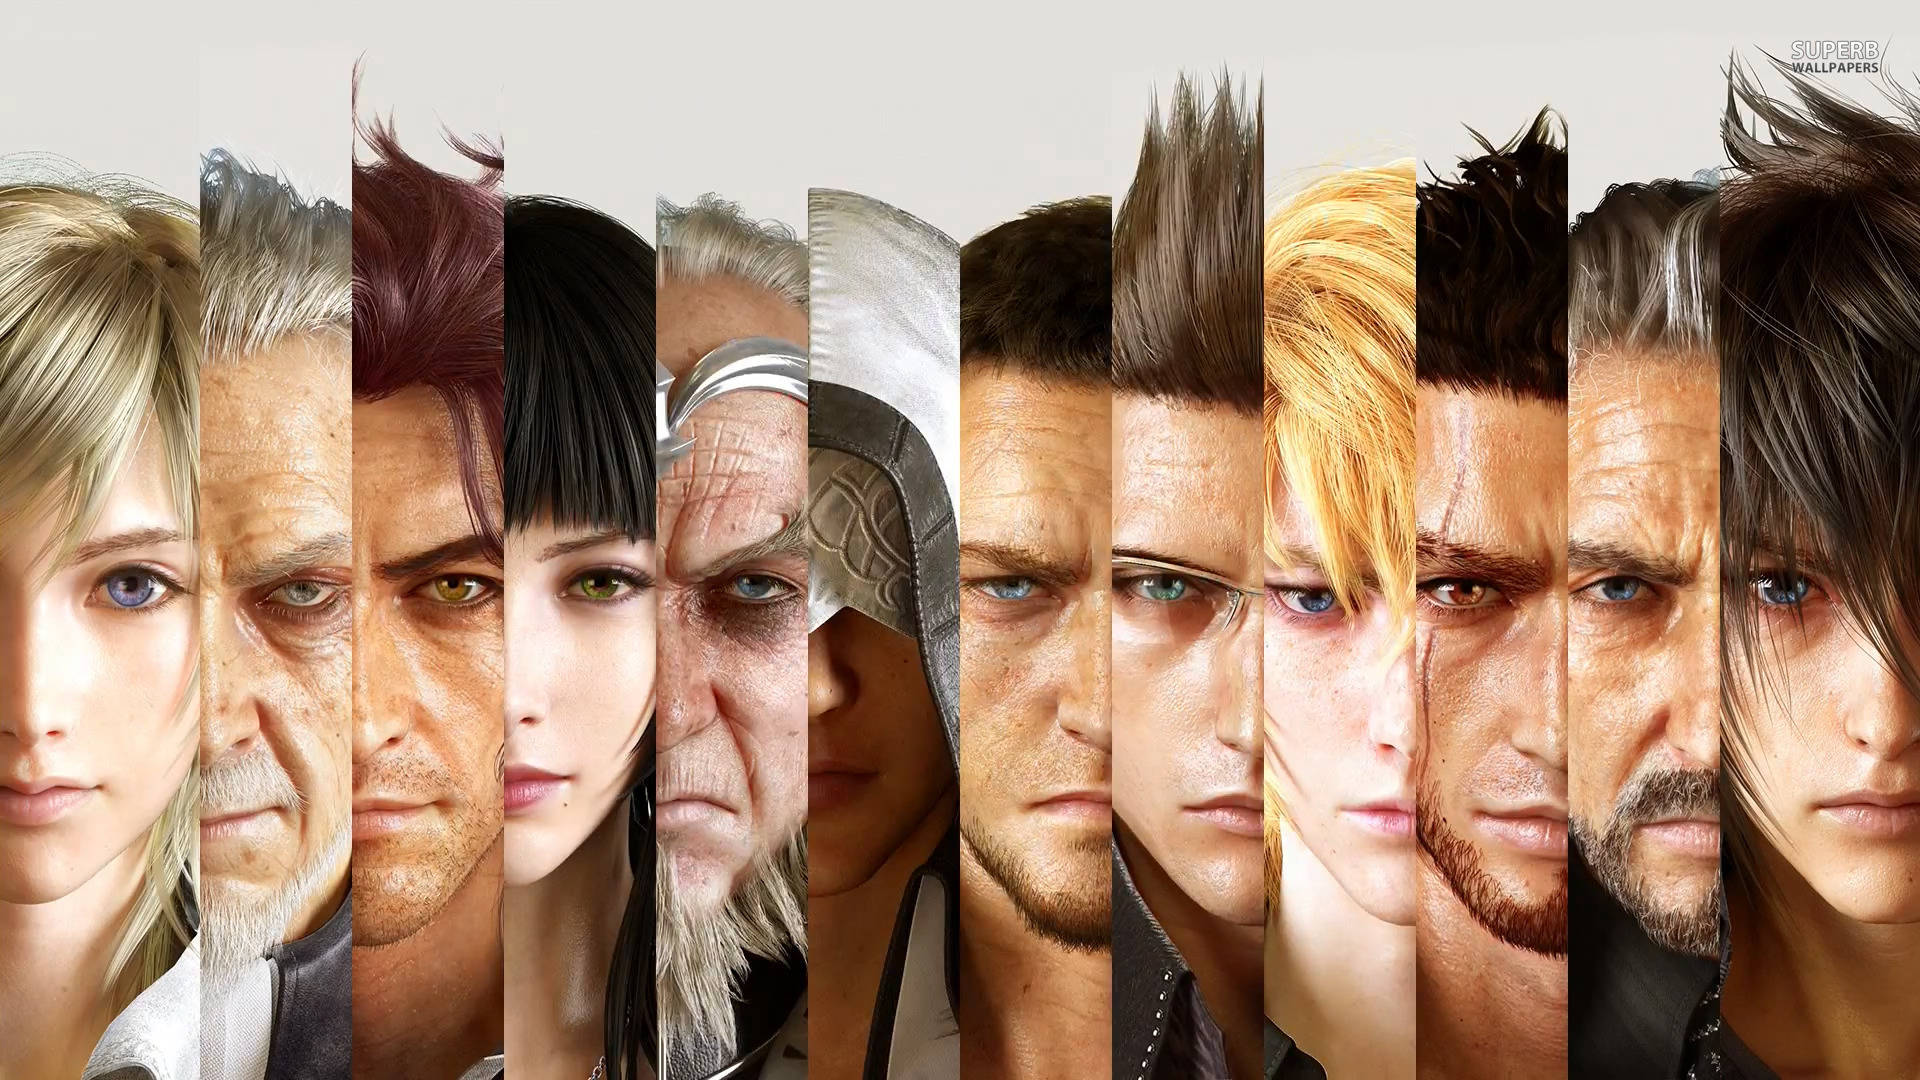 Final Fantasy Xv's Main Cast Wallpaper